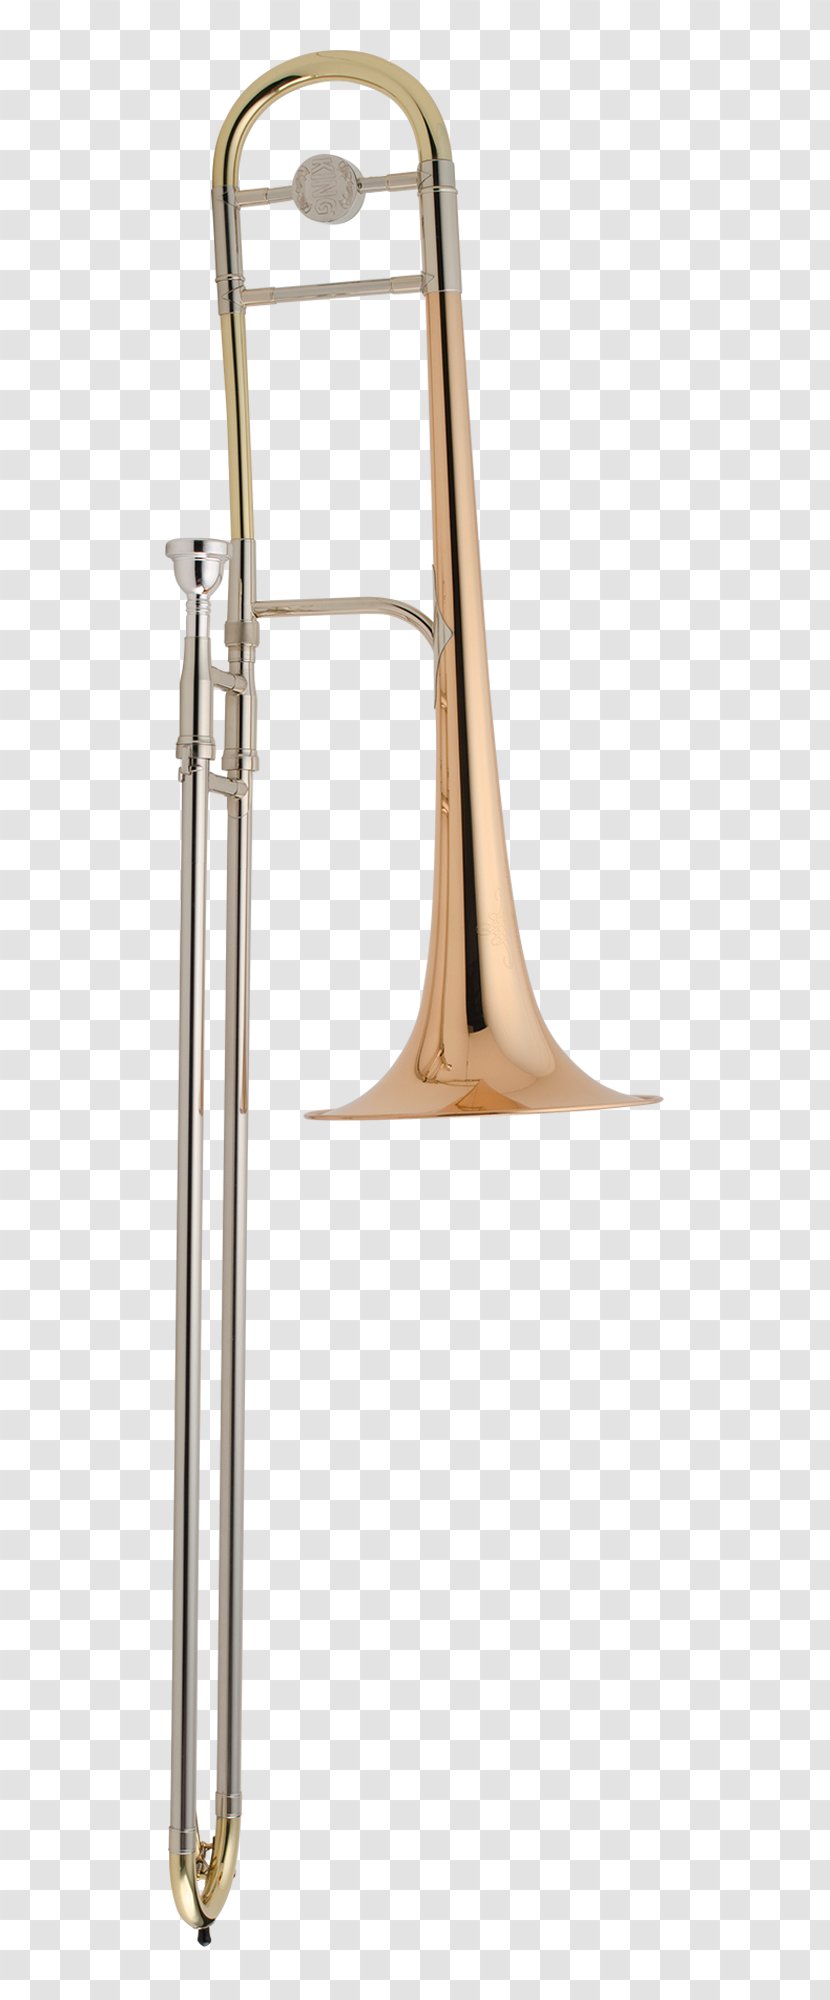 Types Of Trombone Flugelhorn Mellophone Saxhorn - Jazz Band Transparent PNG